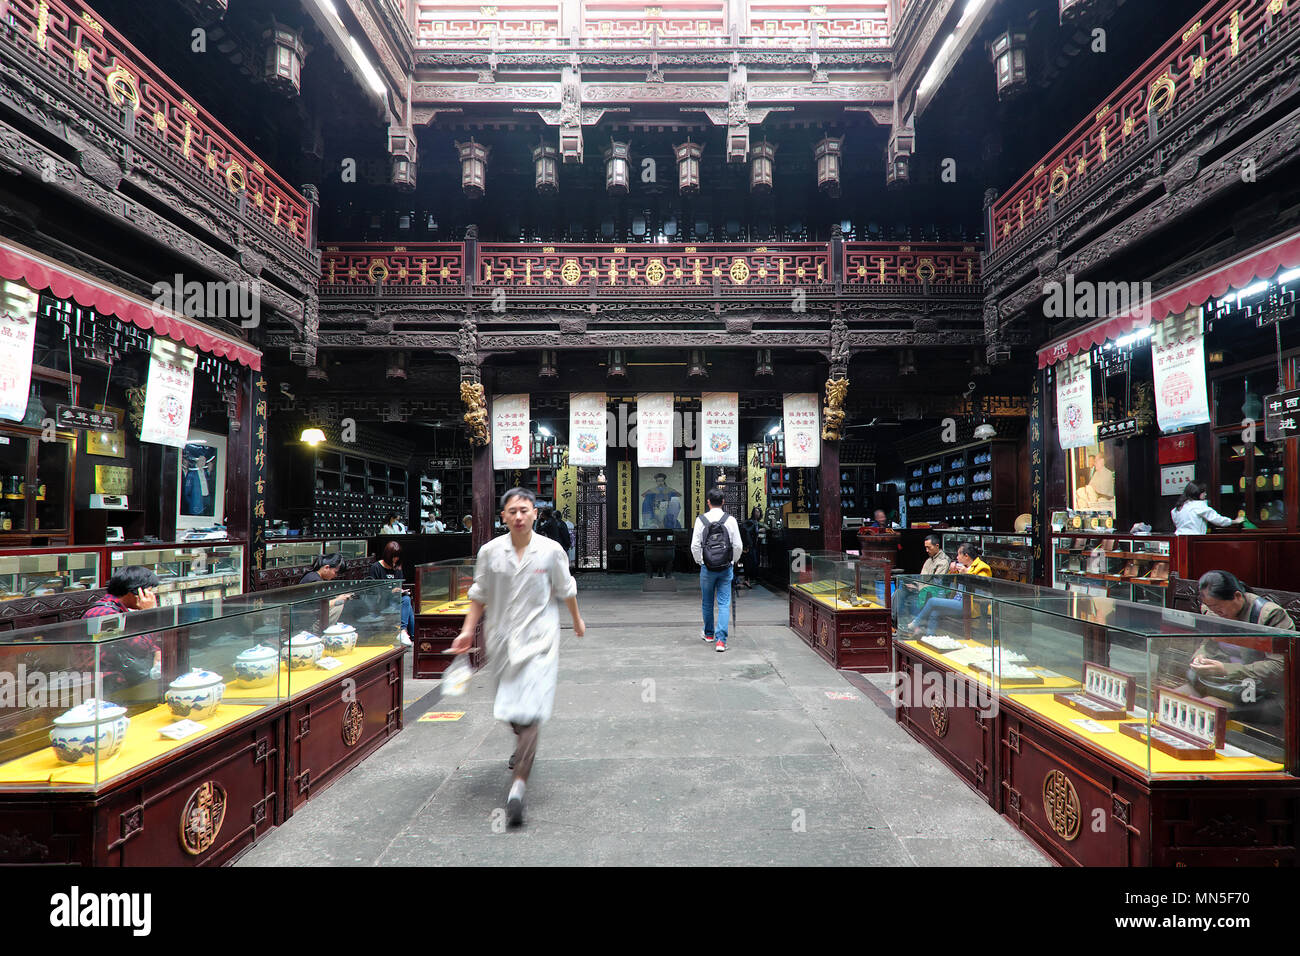 Museum of Traditional Chinese Medicine / Hu Qing Yu Tang / Huqingyutang Pharmacy, Qinghefang Ancient Street, Hangzhou, Zhejiang Province, China Stock Photo